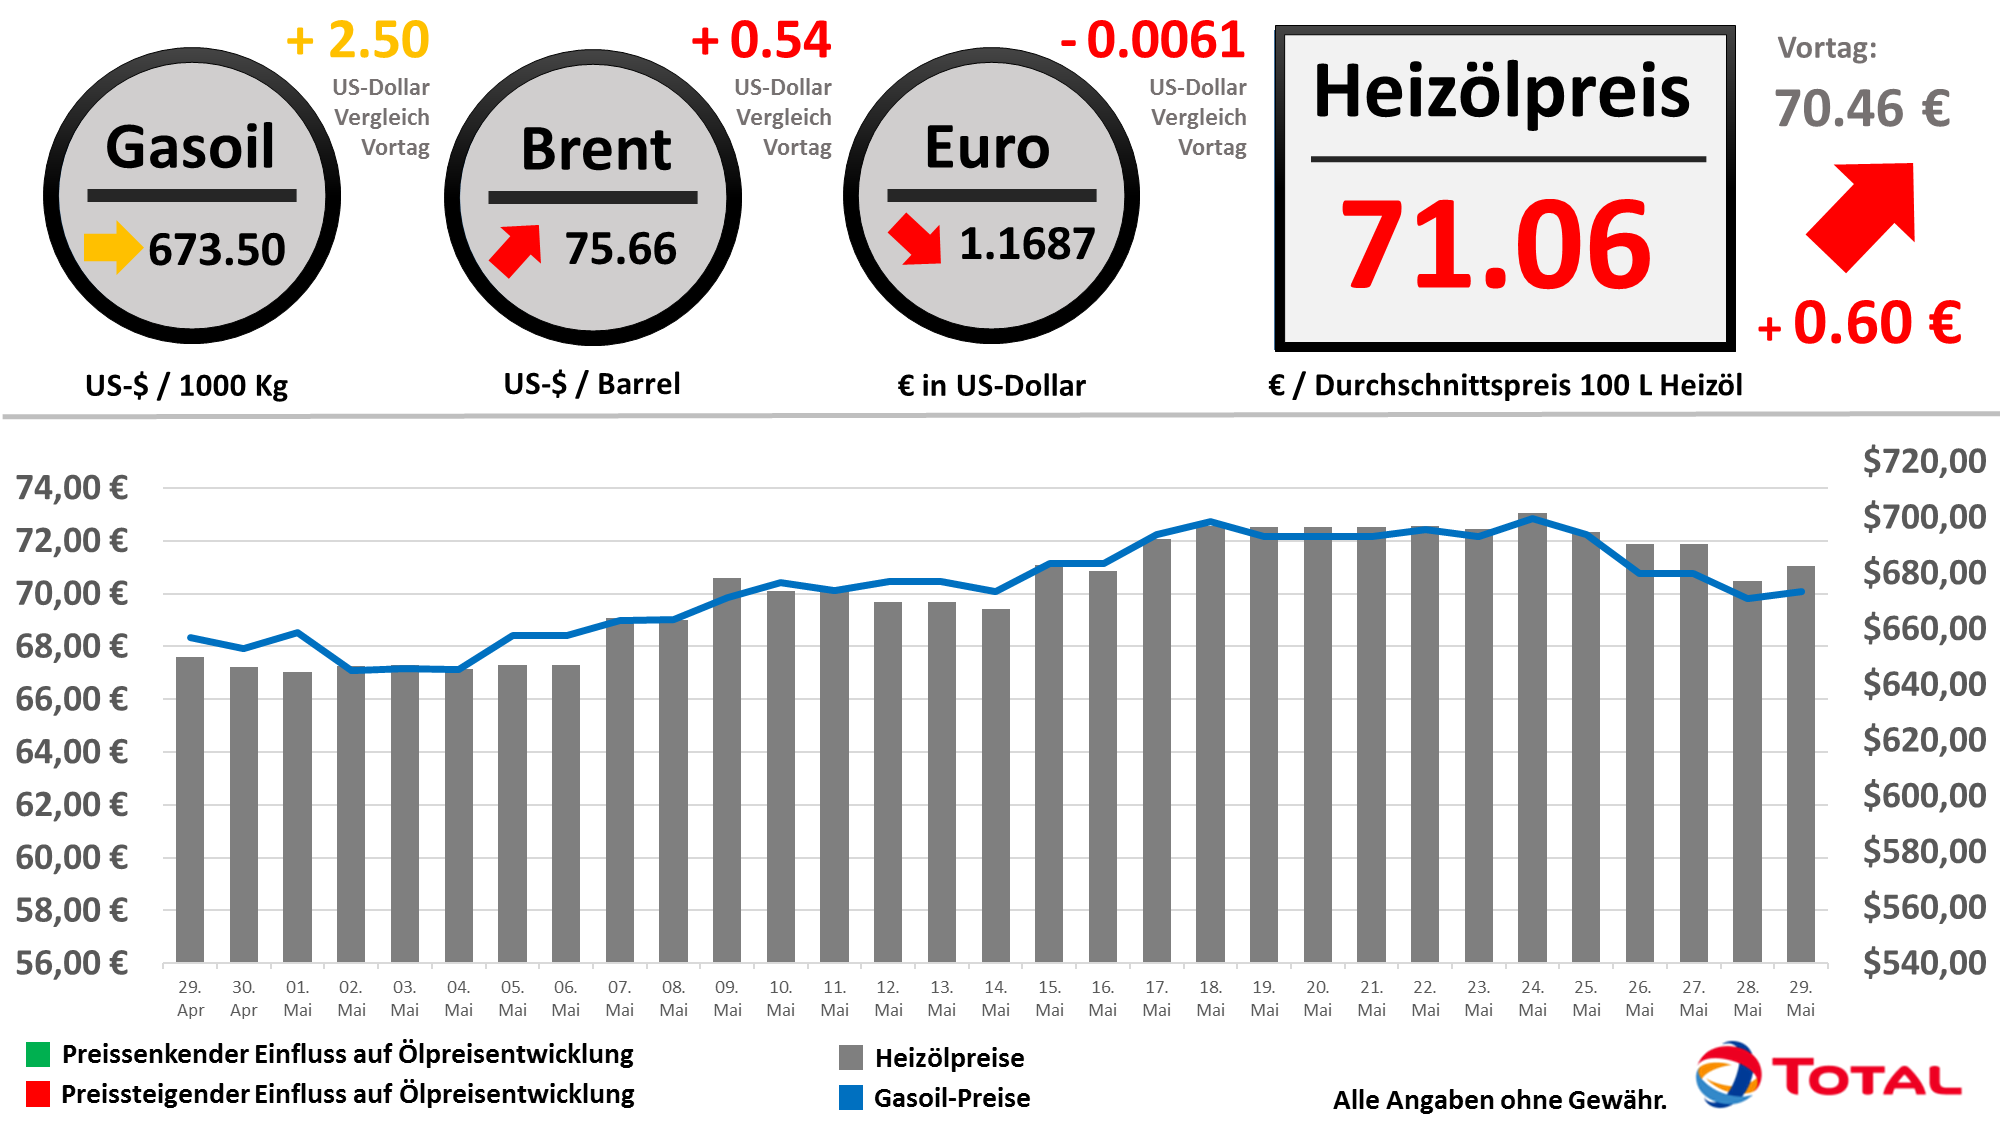 Heizölpreisentwicklung der letzten 30 Tage Stand: 29.05.2018